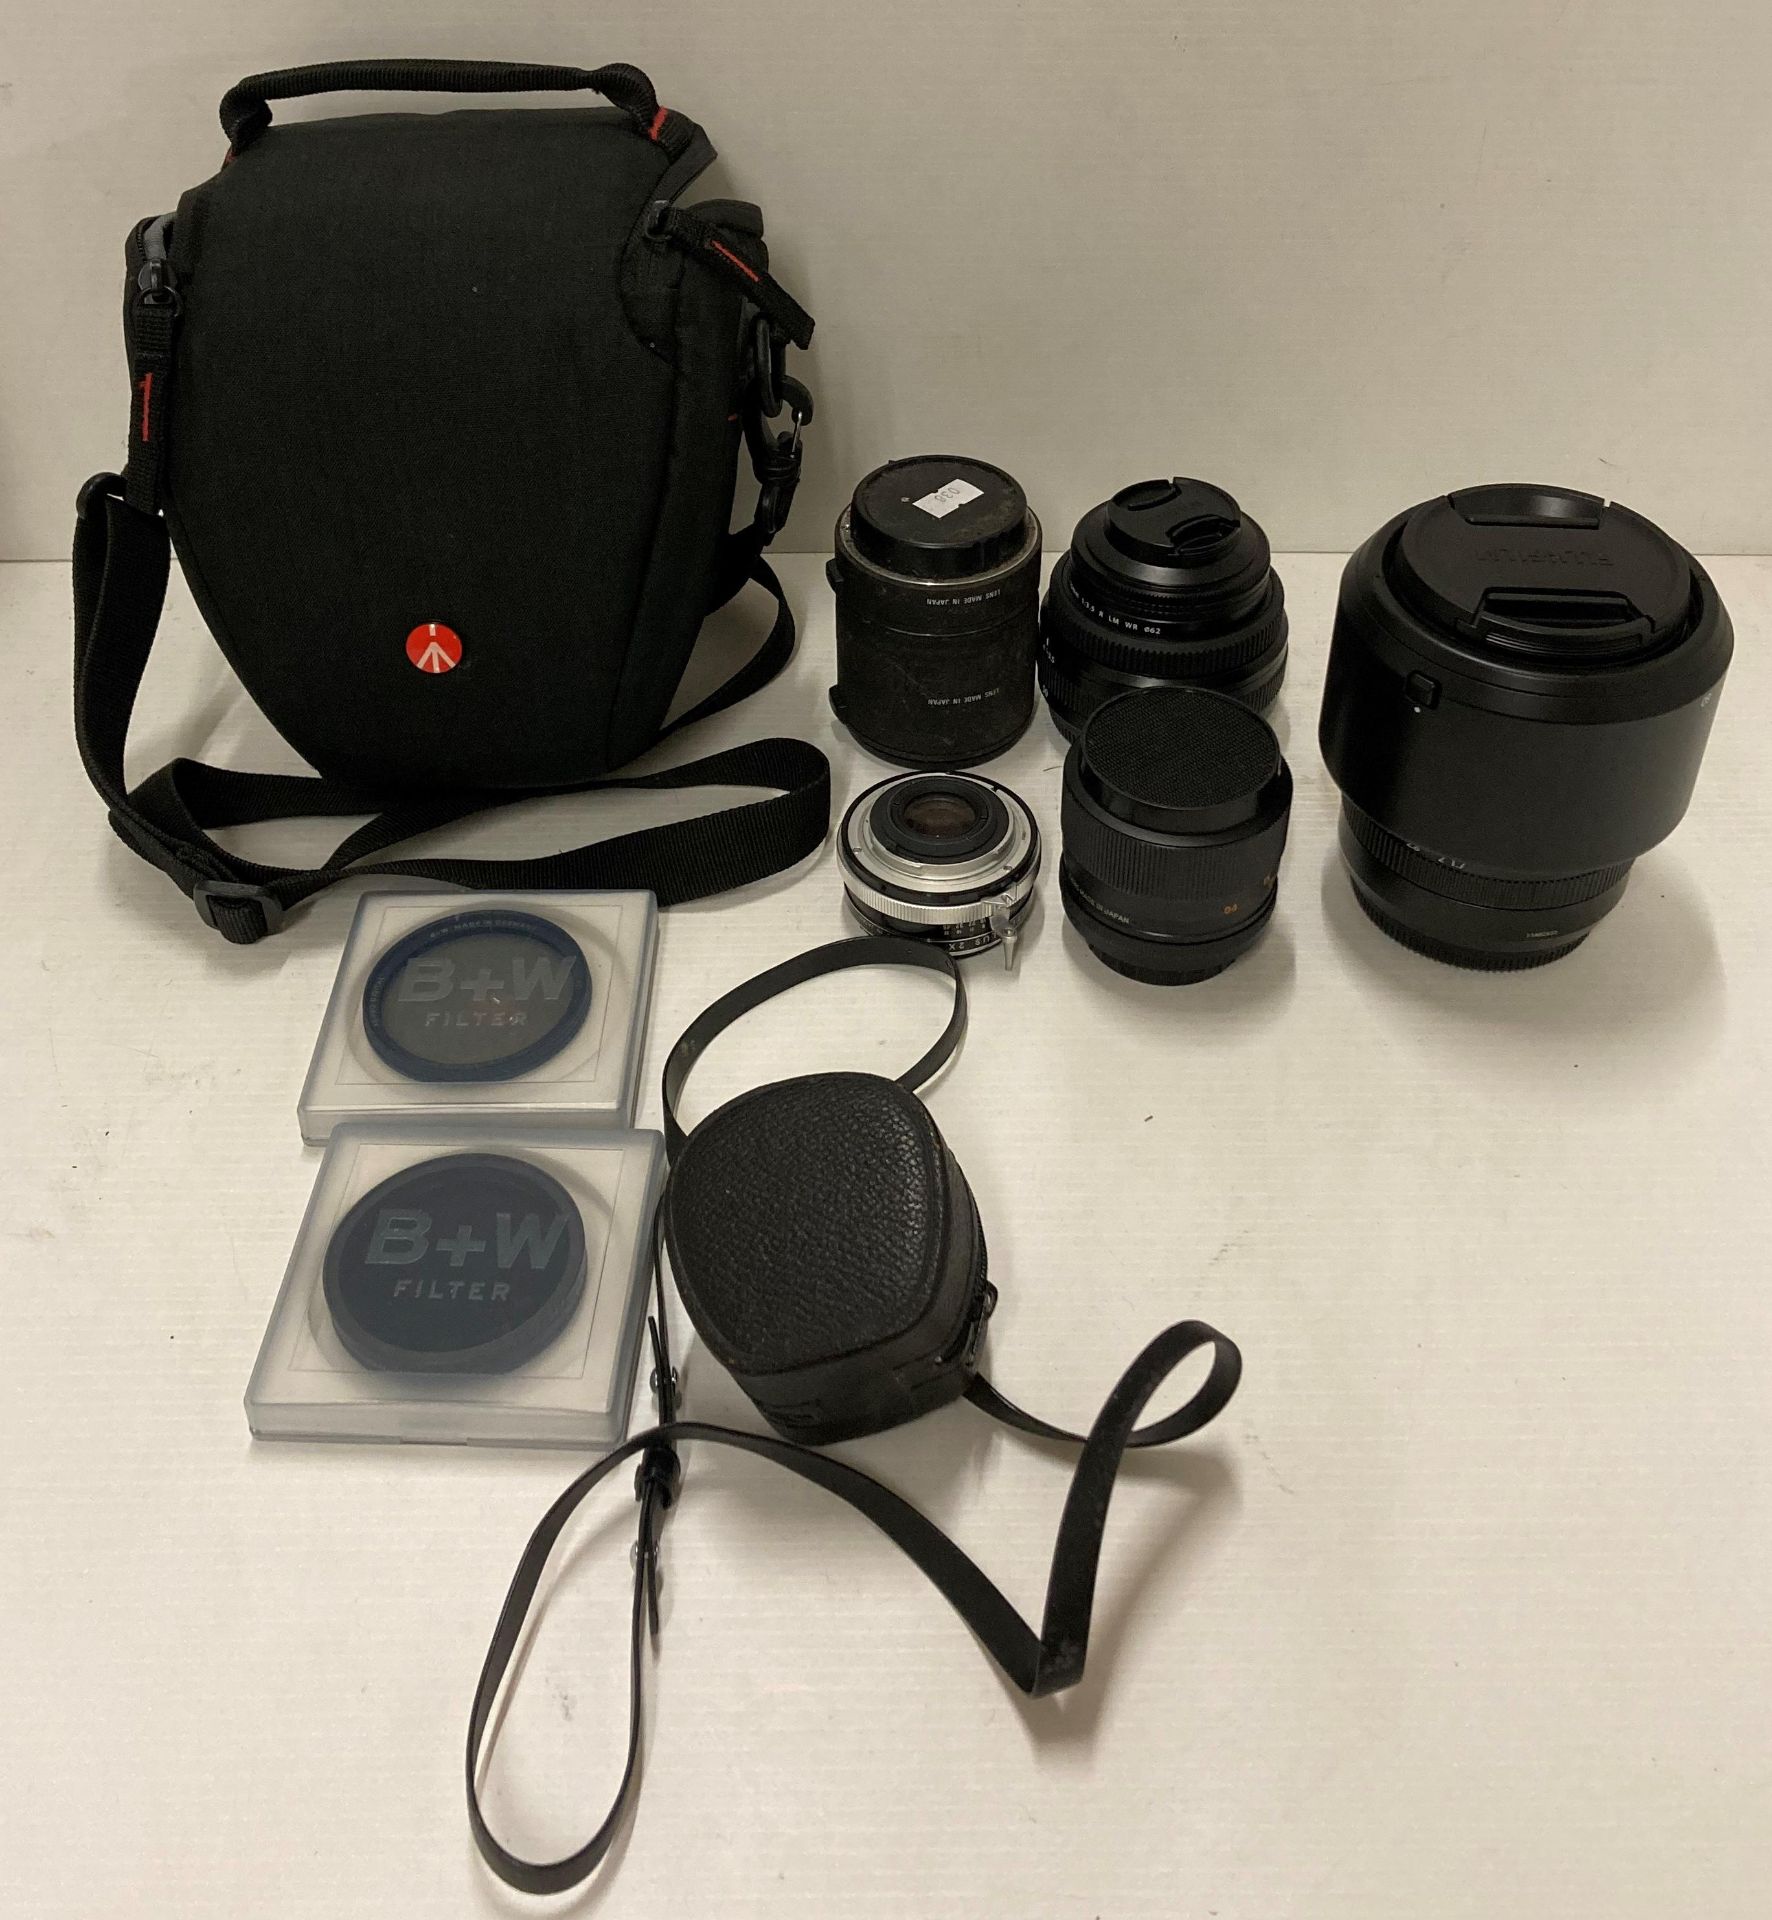 Fujion GF lens 80mm 1:1,7 R WR 077 with a XS-Pro Digital B+W 77007 filter, Fujion GF lens 50mm 1:3.